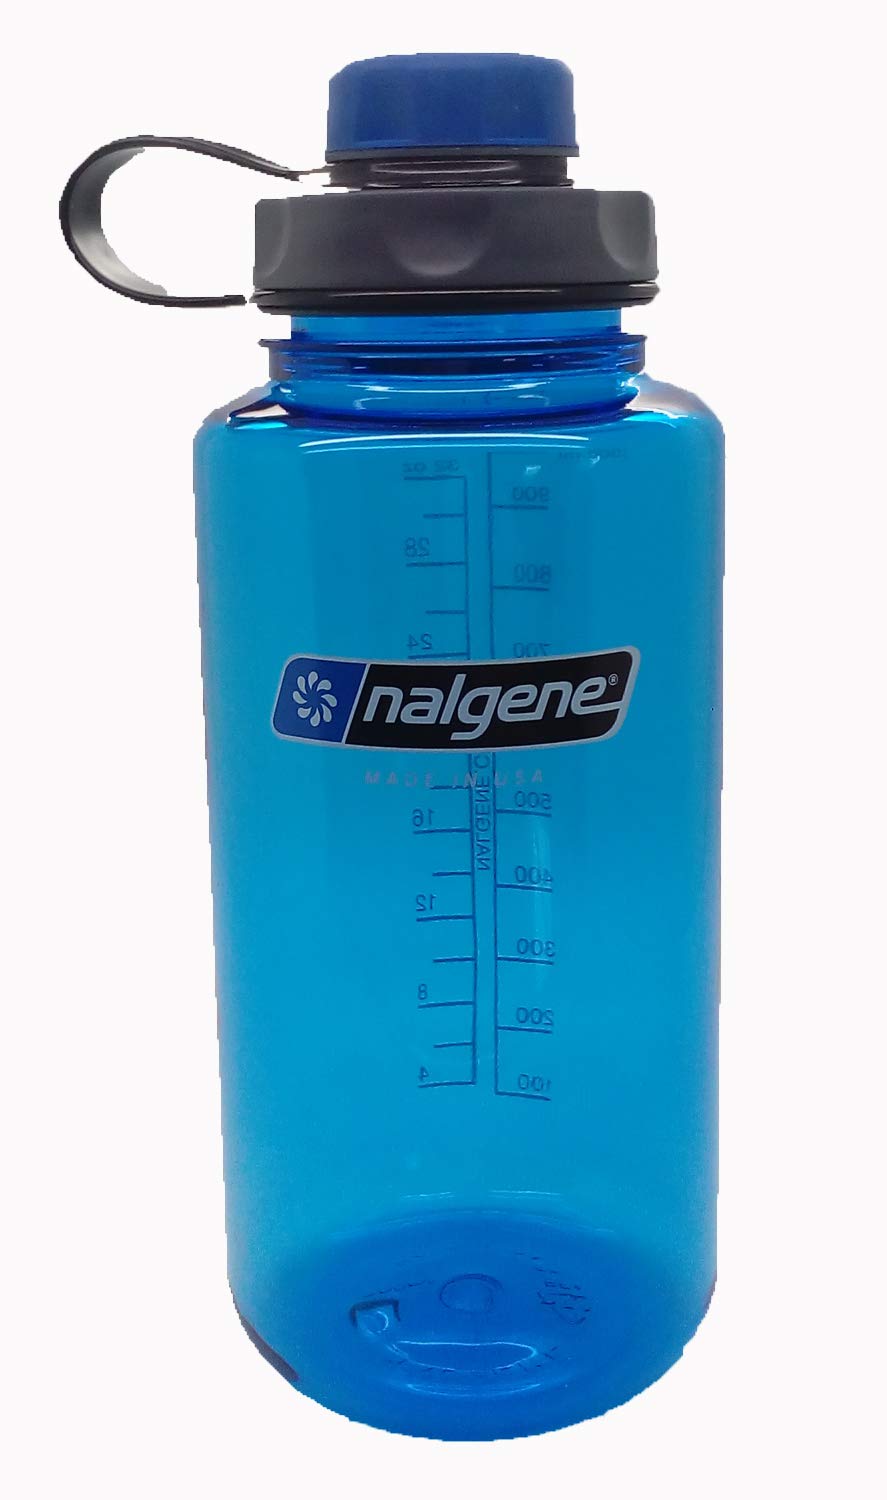 Nalgene Flasche 'Everyday Weithals' - 1 L, blau, capCAP'-blau